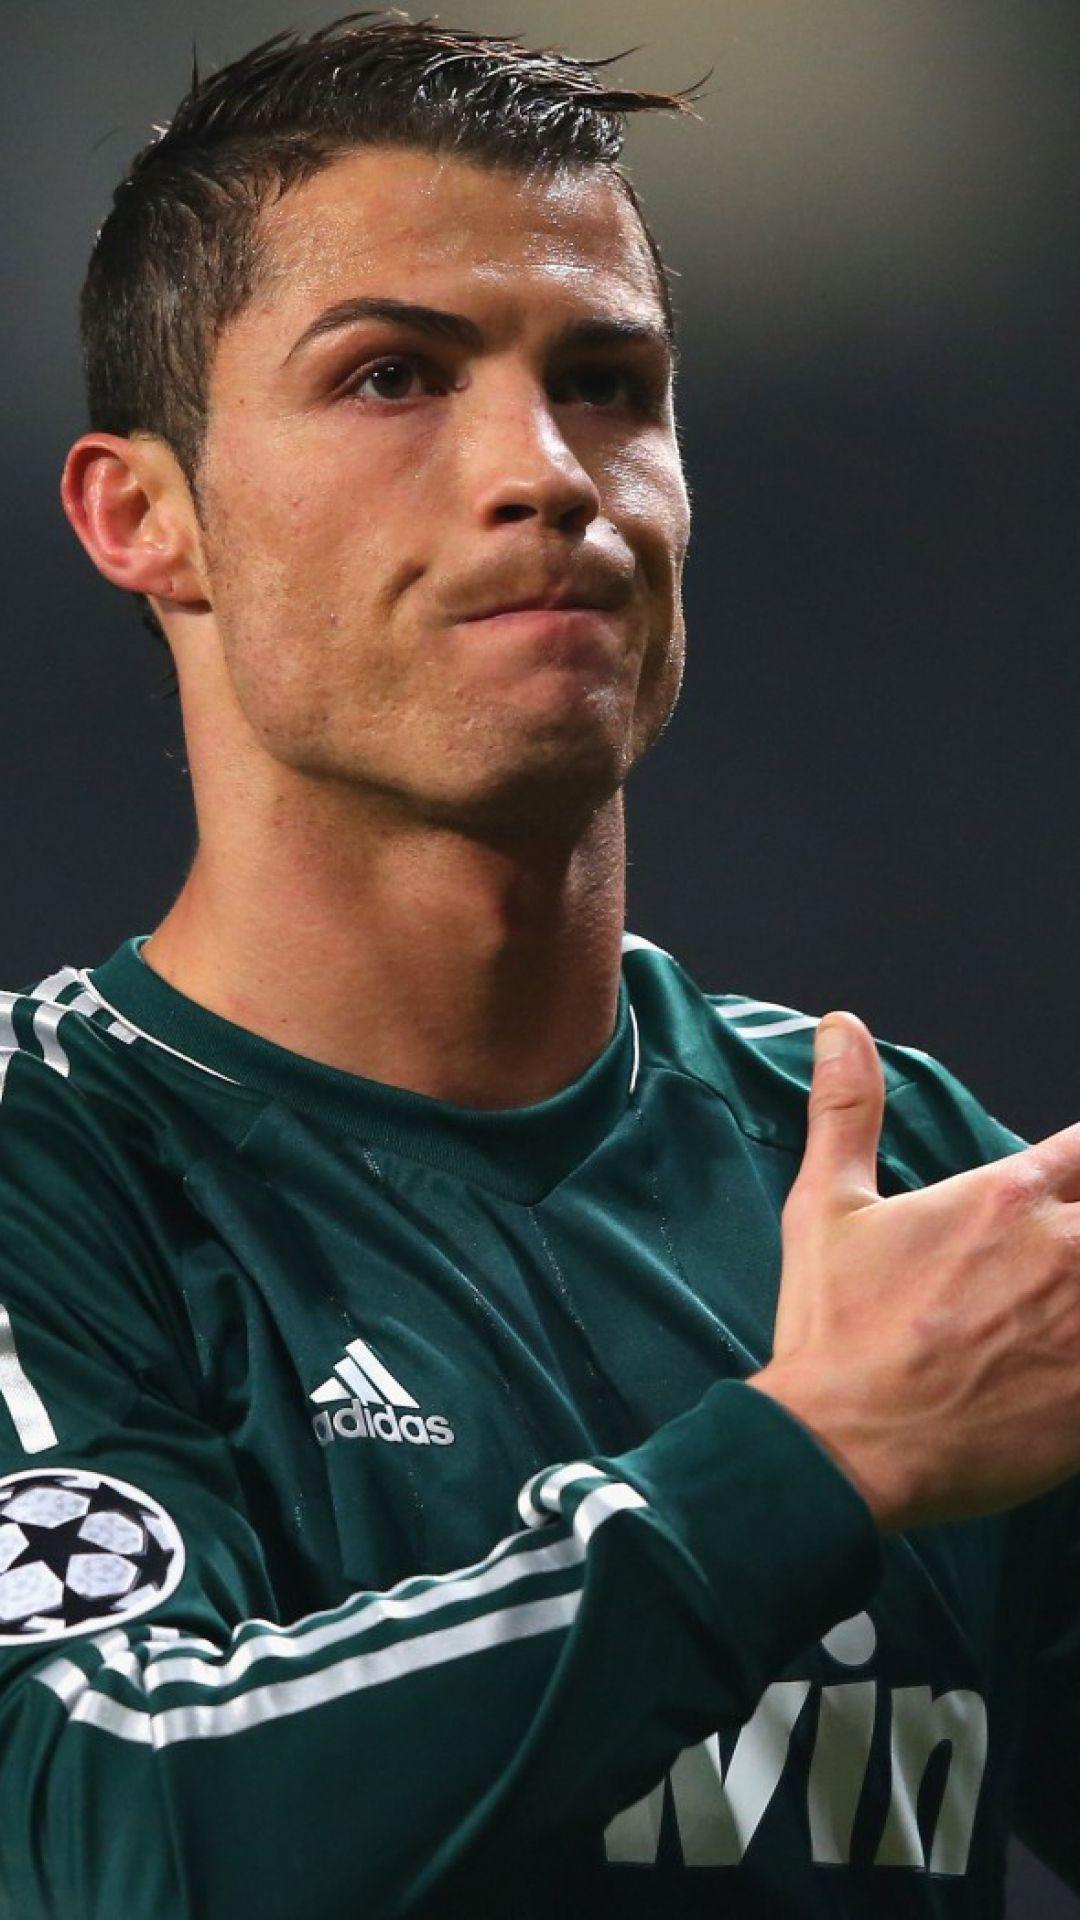 Cristiano Ronaldo Picture for Samsung Galaxy A9 Pro HD Image